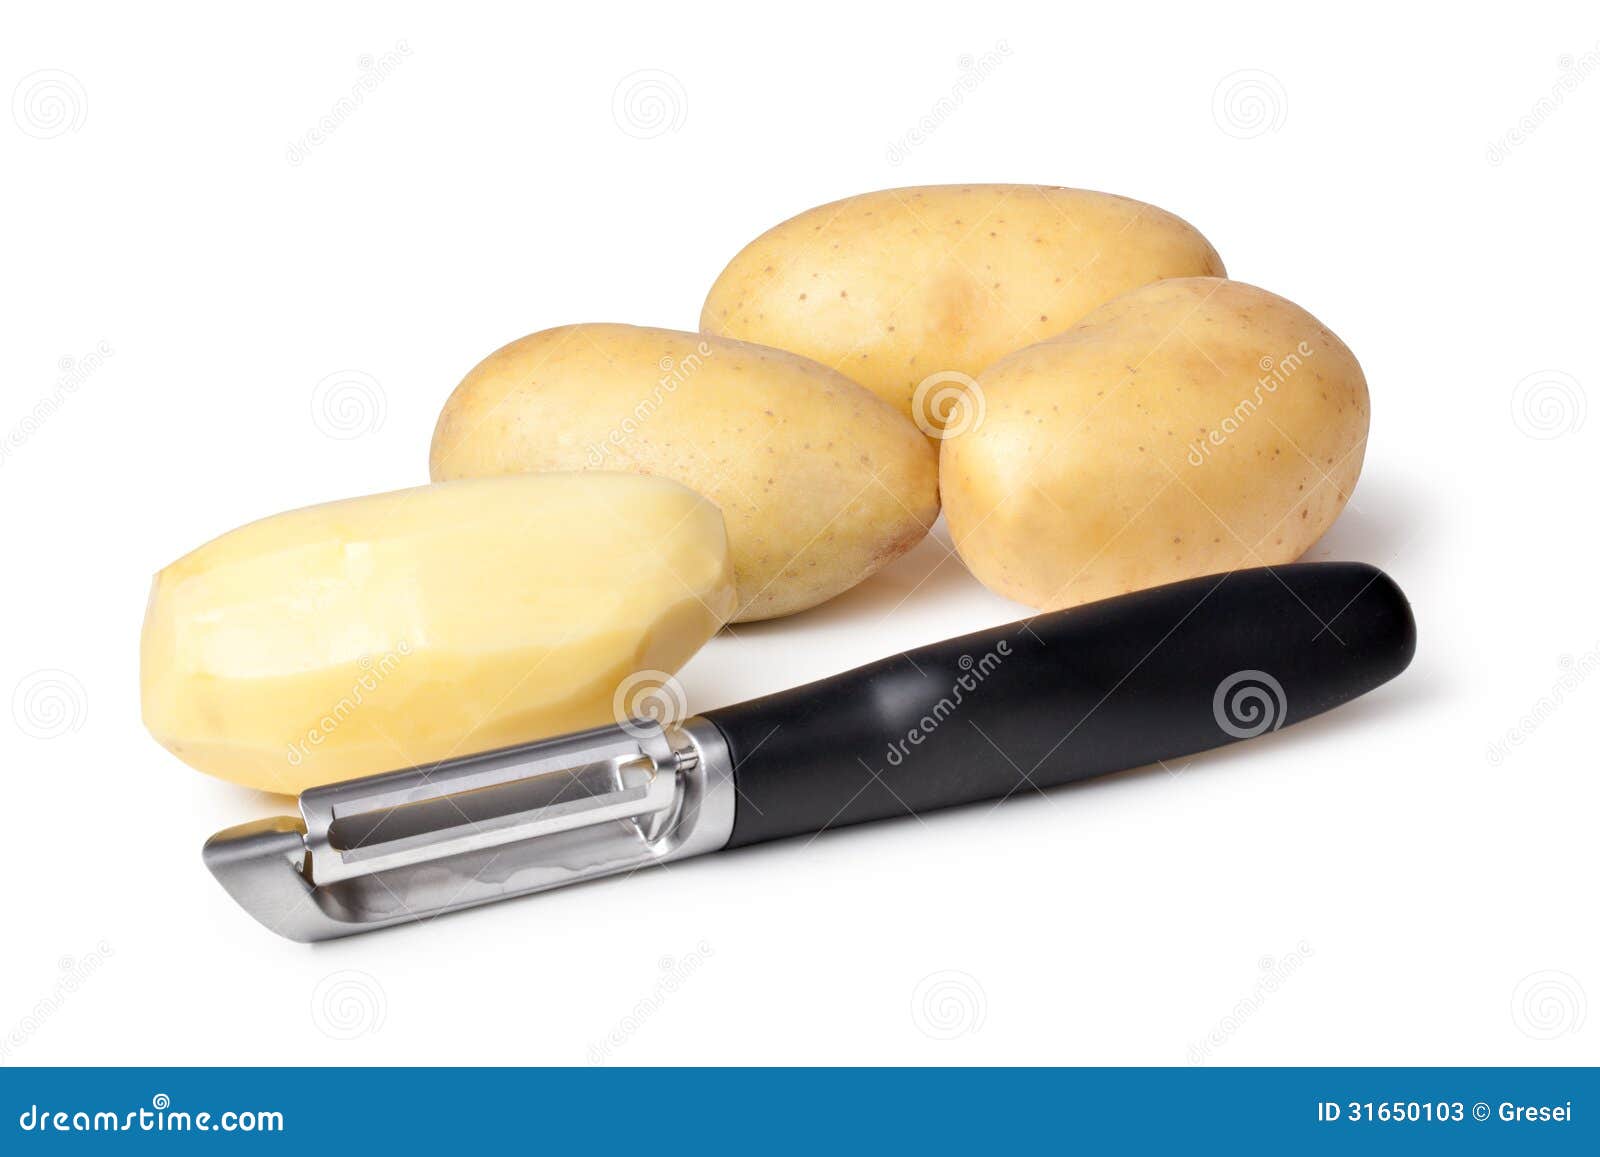 potatoes and peeler